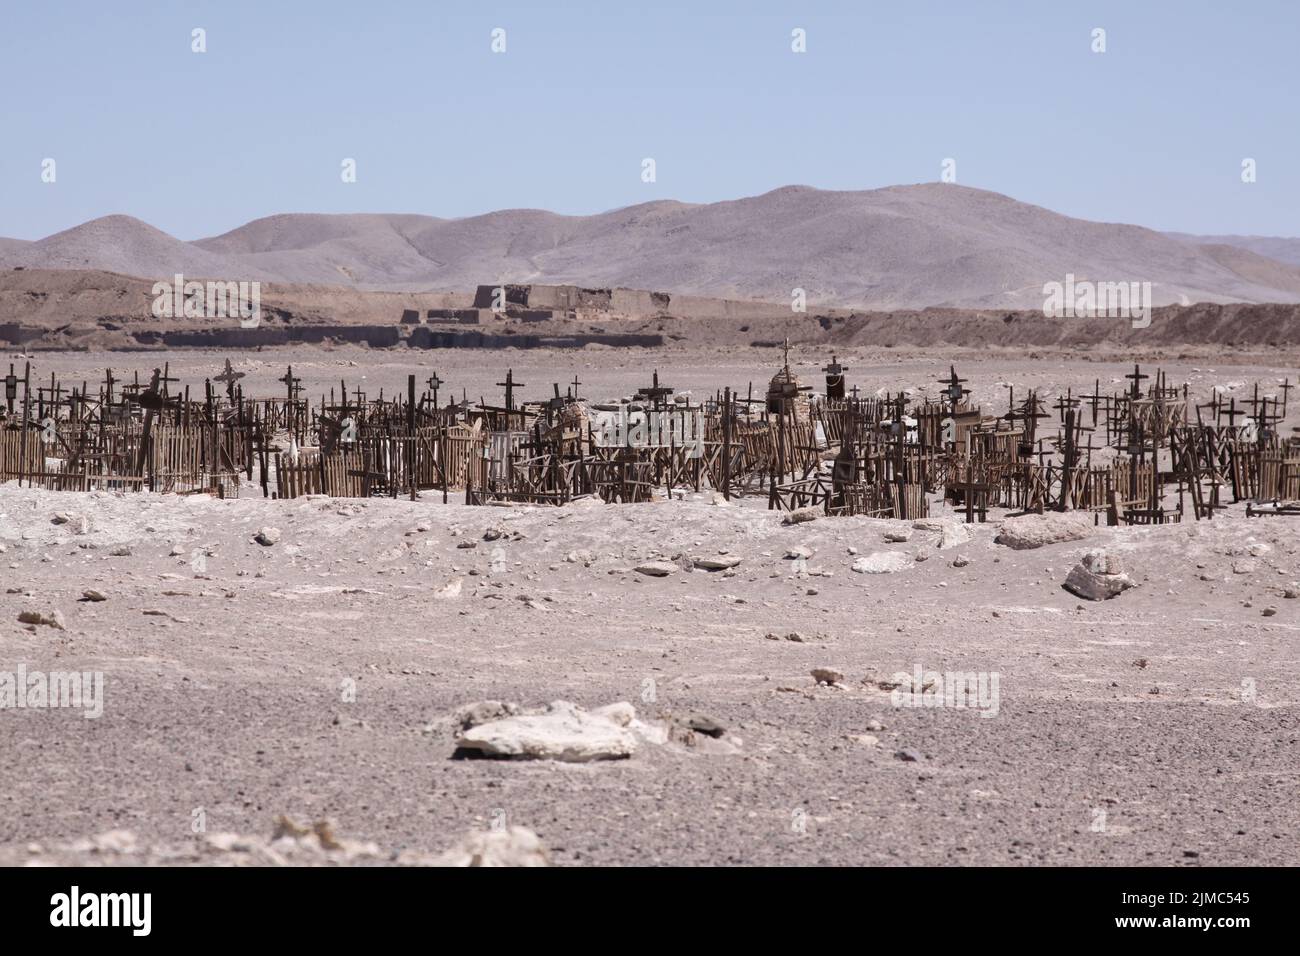 Gruseliger alter Friedhof mit Gräber in Wüste verlassen und einsam Stock Photo